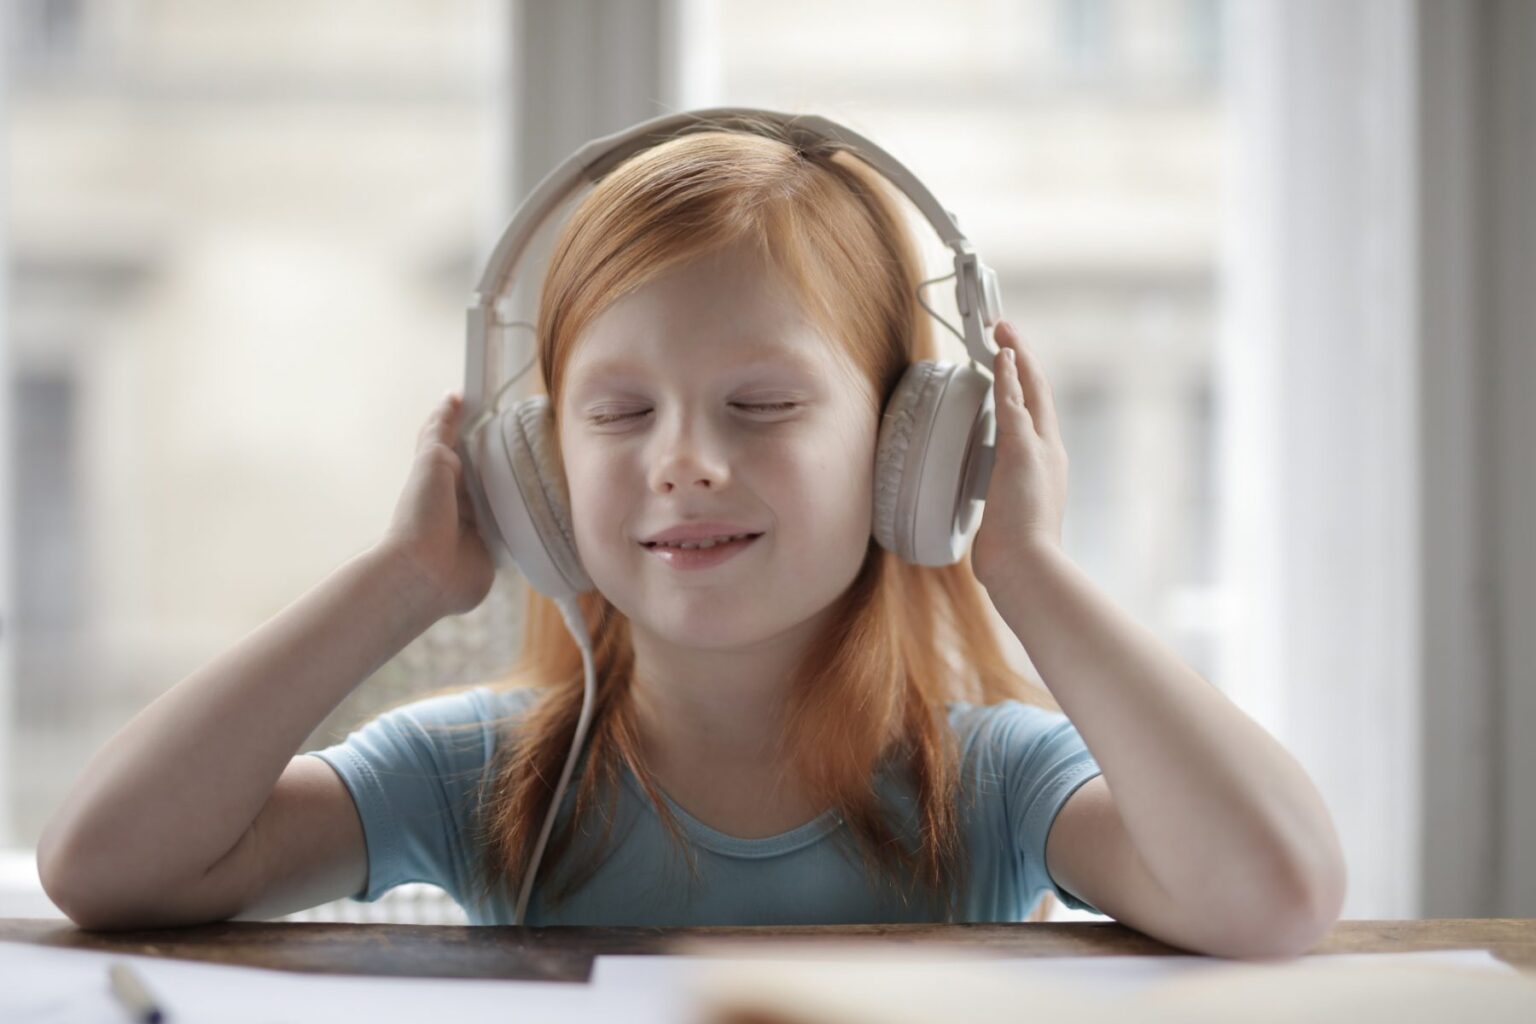 Ακοή:-Η-υπερβολική-χρήση-ακουστικών-μπορεί-να-προκαλέσει-απώλεια-ακοής